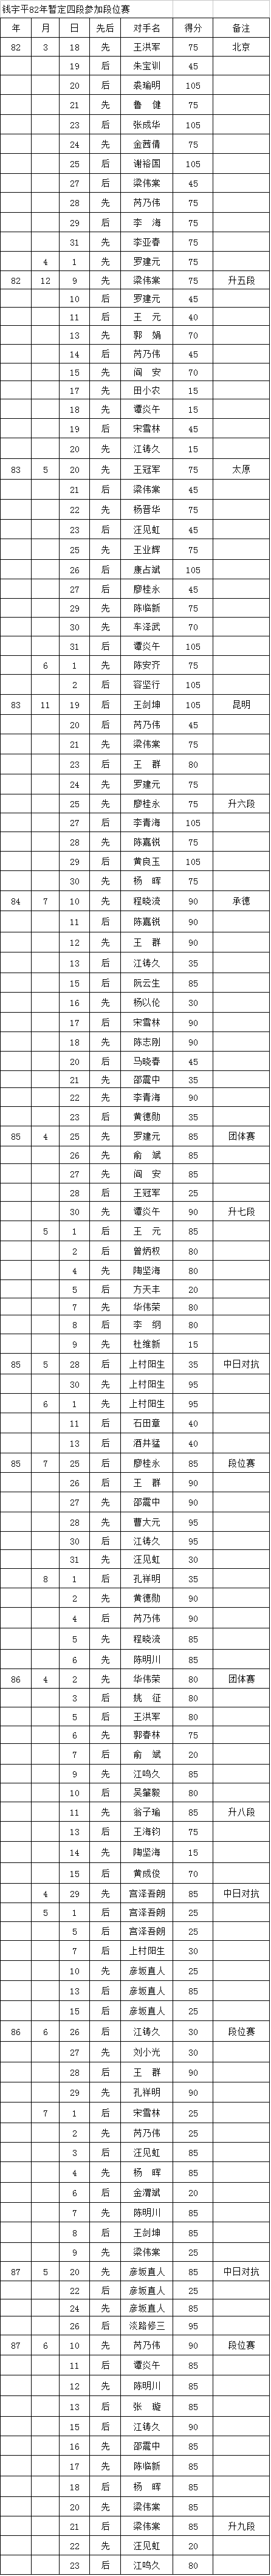 中国围棋职业段位制的历史